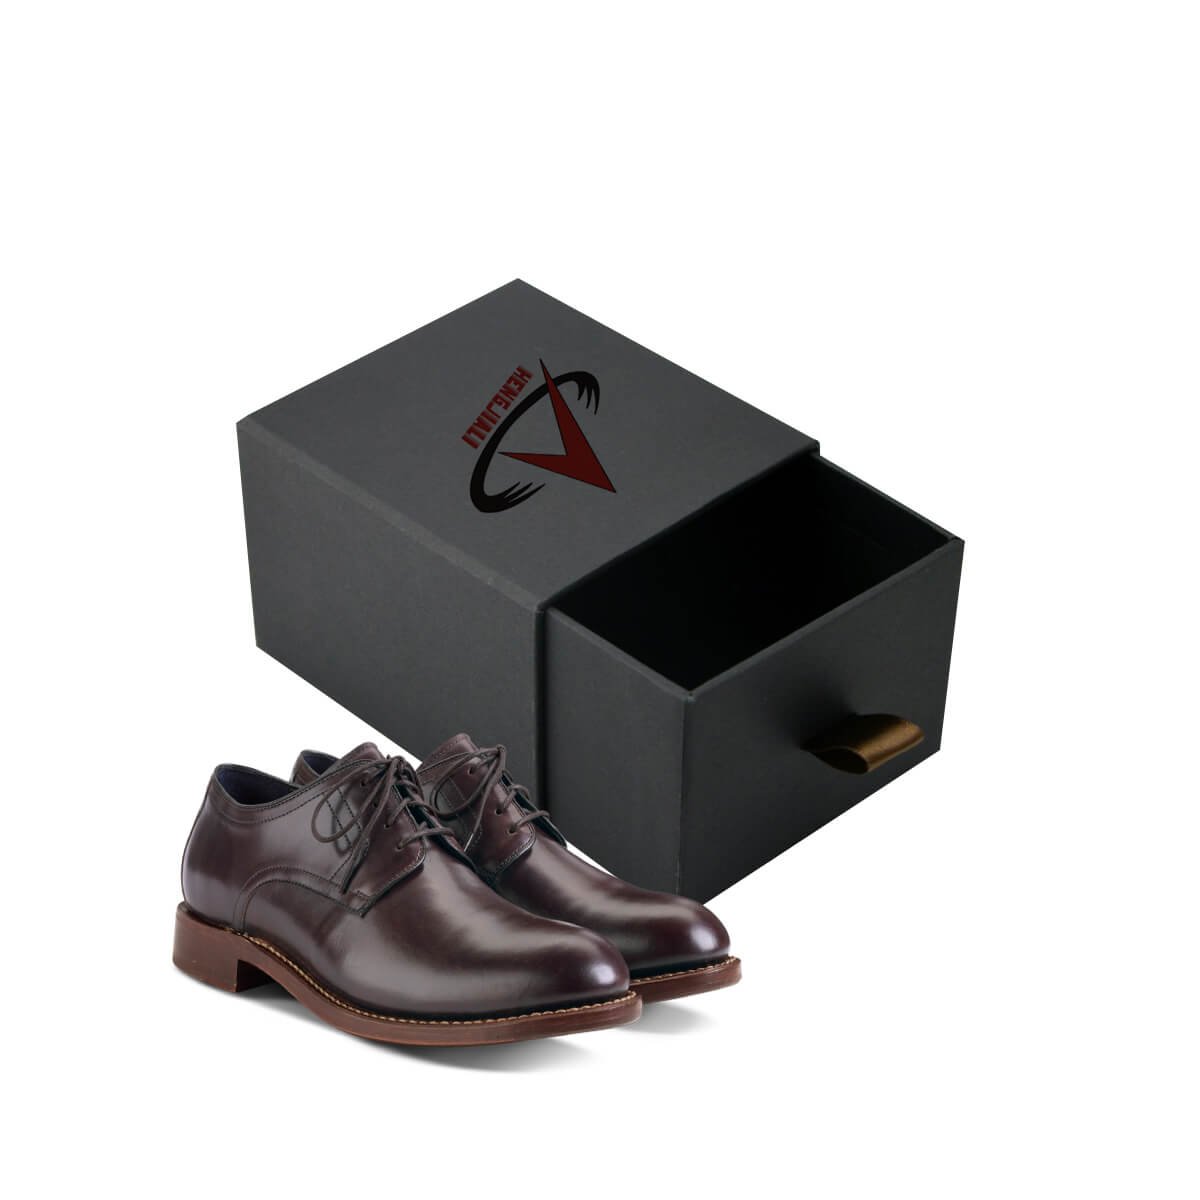 Buy custom shoe boxes | Wholesale shoe 